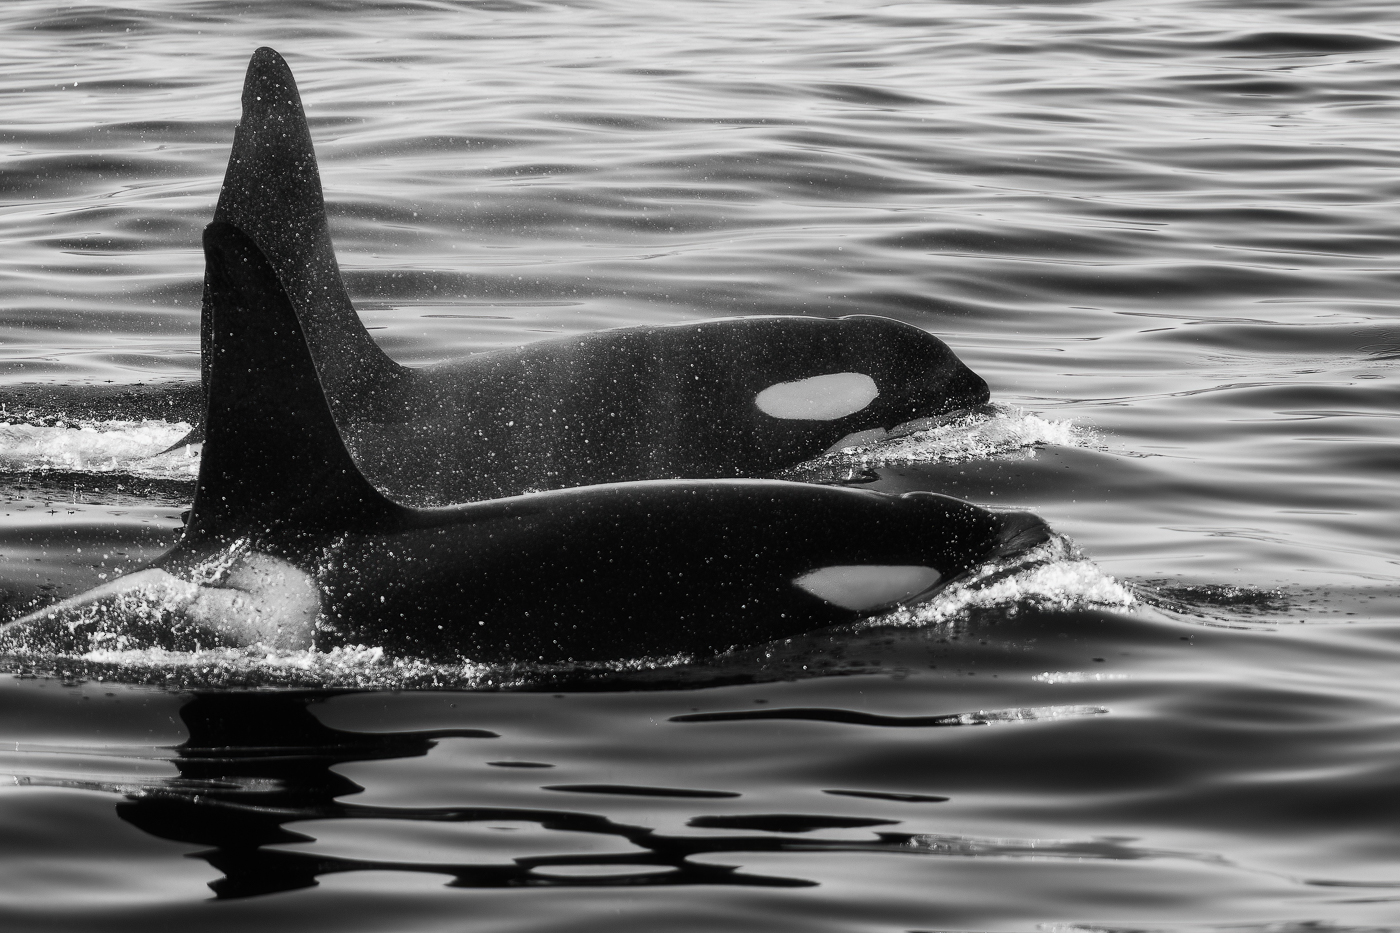 Coppia di orche (Orcinus orca) emerge ed esibisce tutta la bellezza di questi animali. Snæfellsjökull National Park, Islanda.